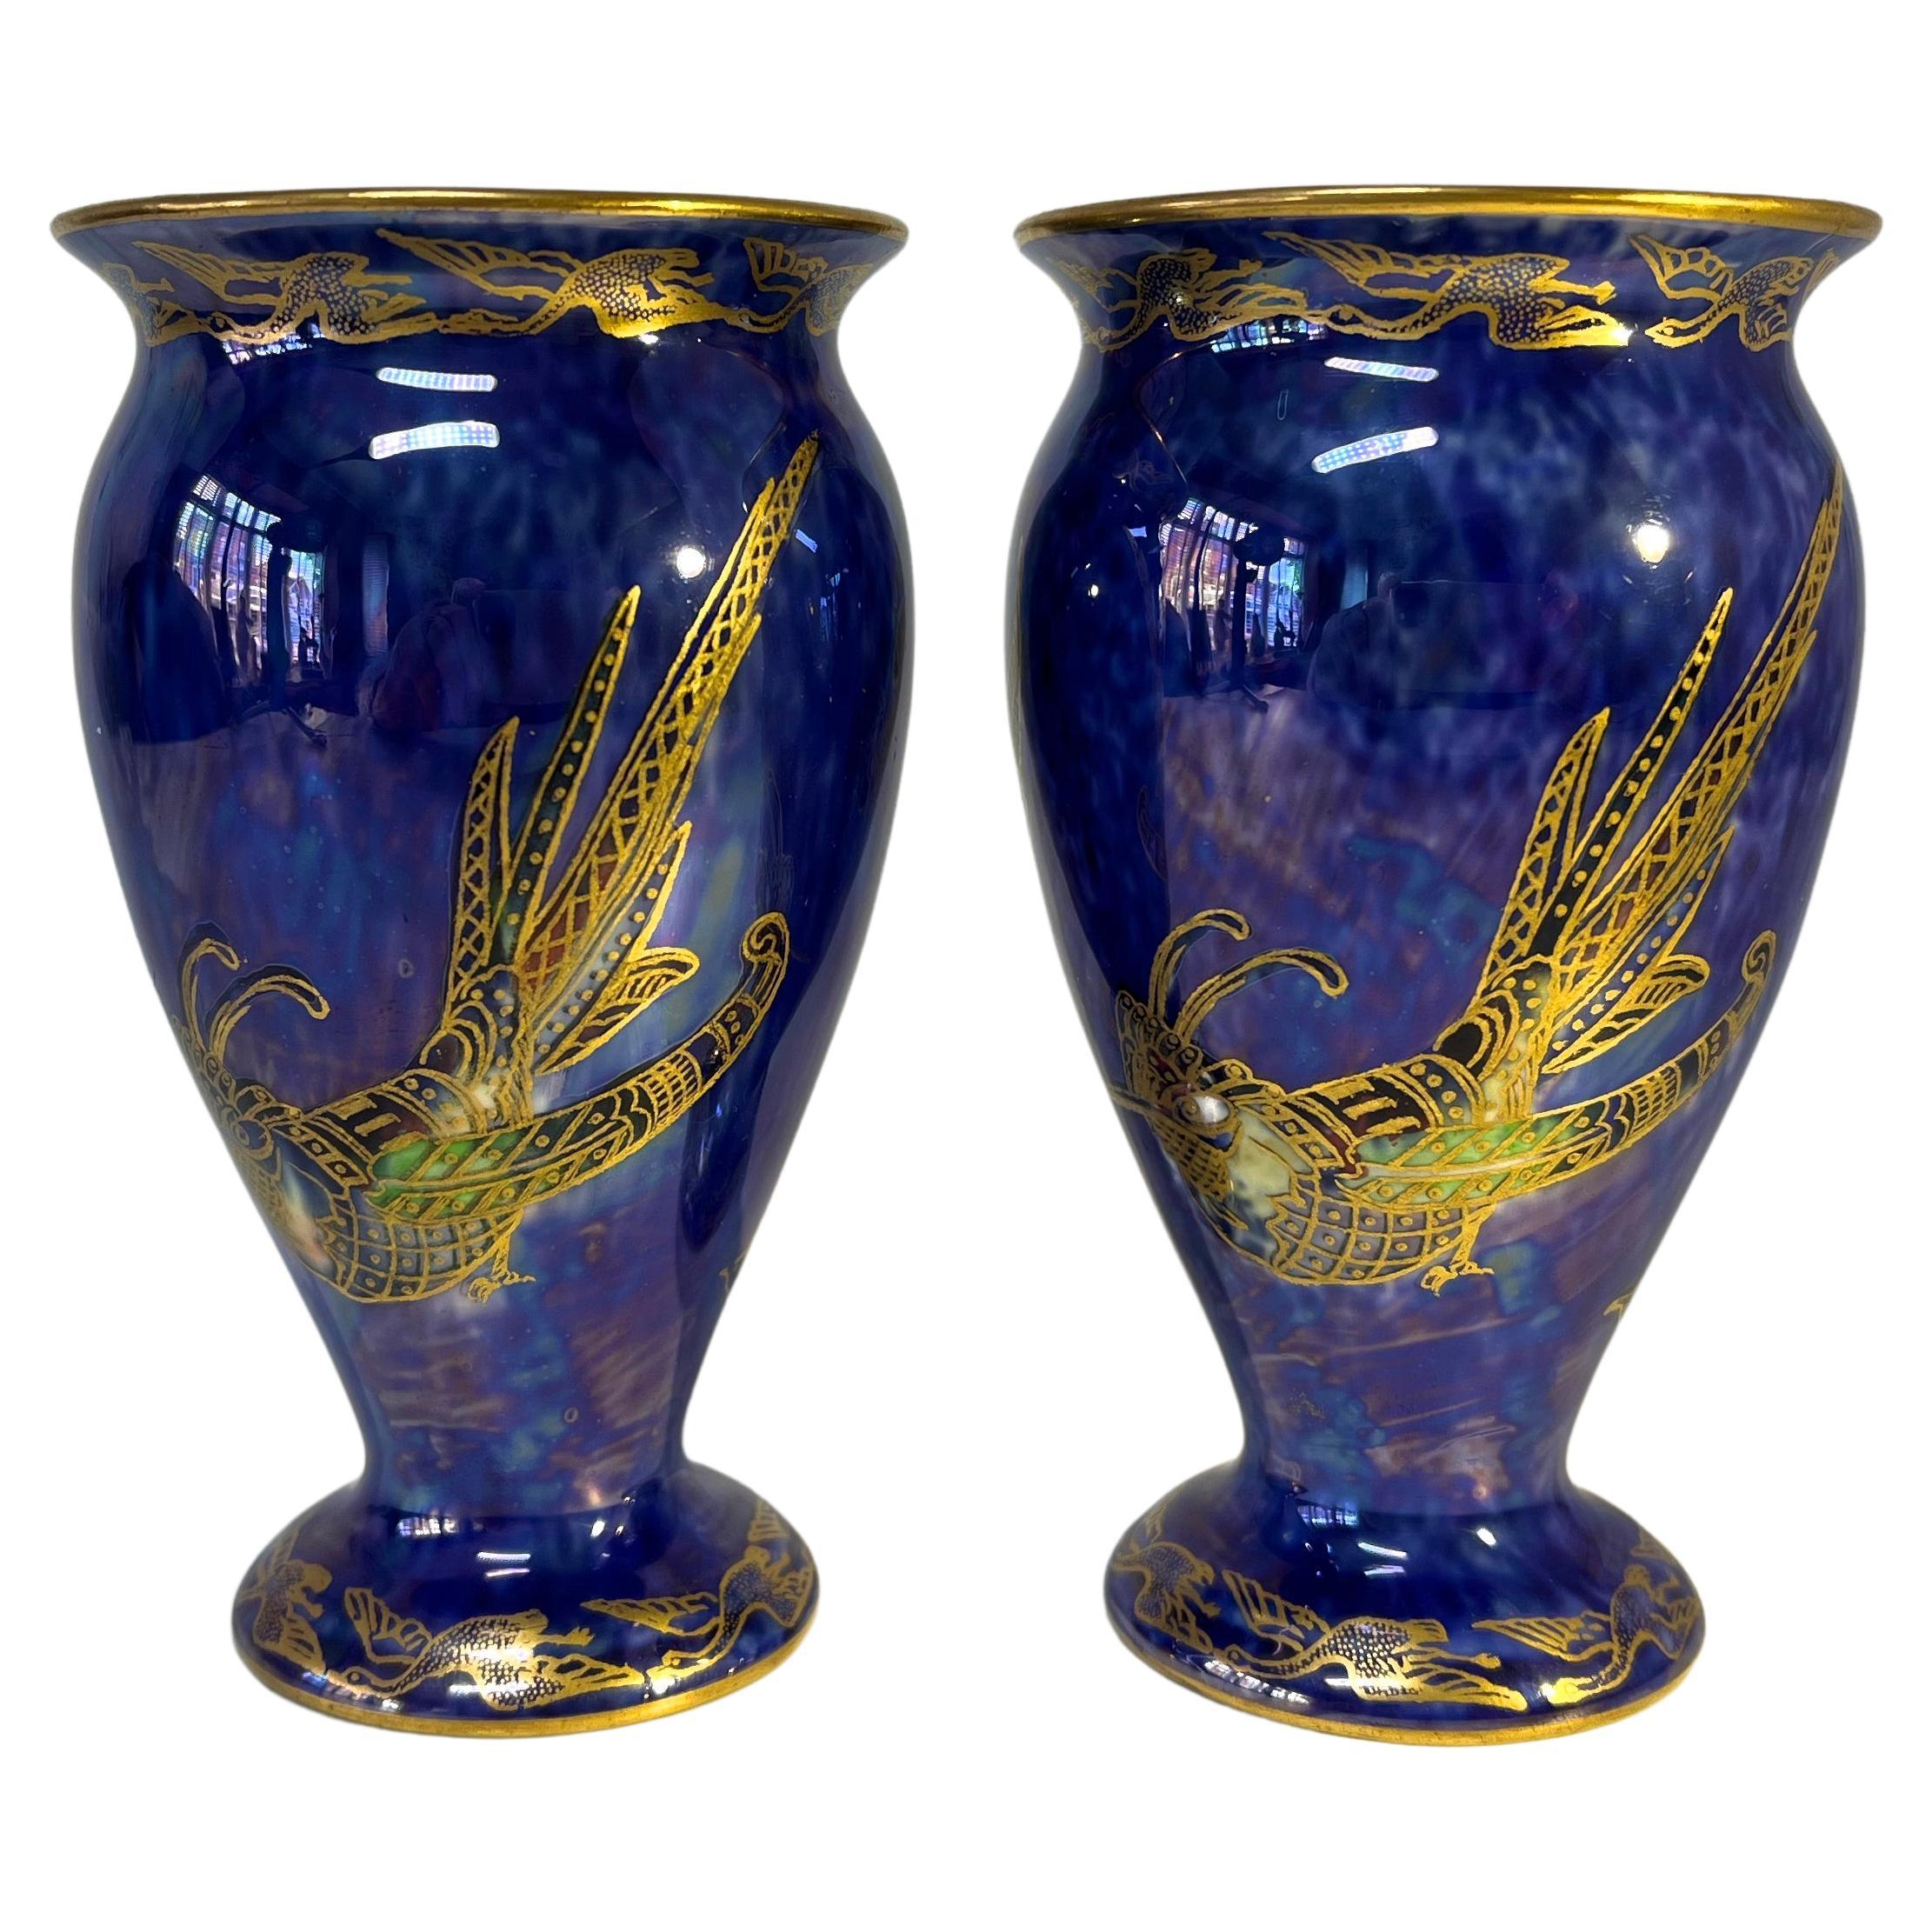 Exquise paire de vases Wedgwood « Royal Blue Bird of Paradise » en lustre ordinaire bleu roi Z5294